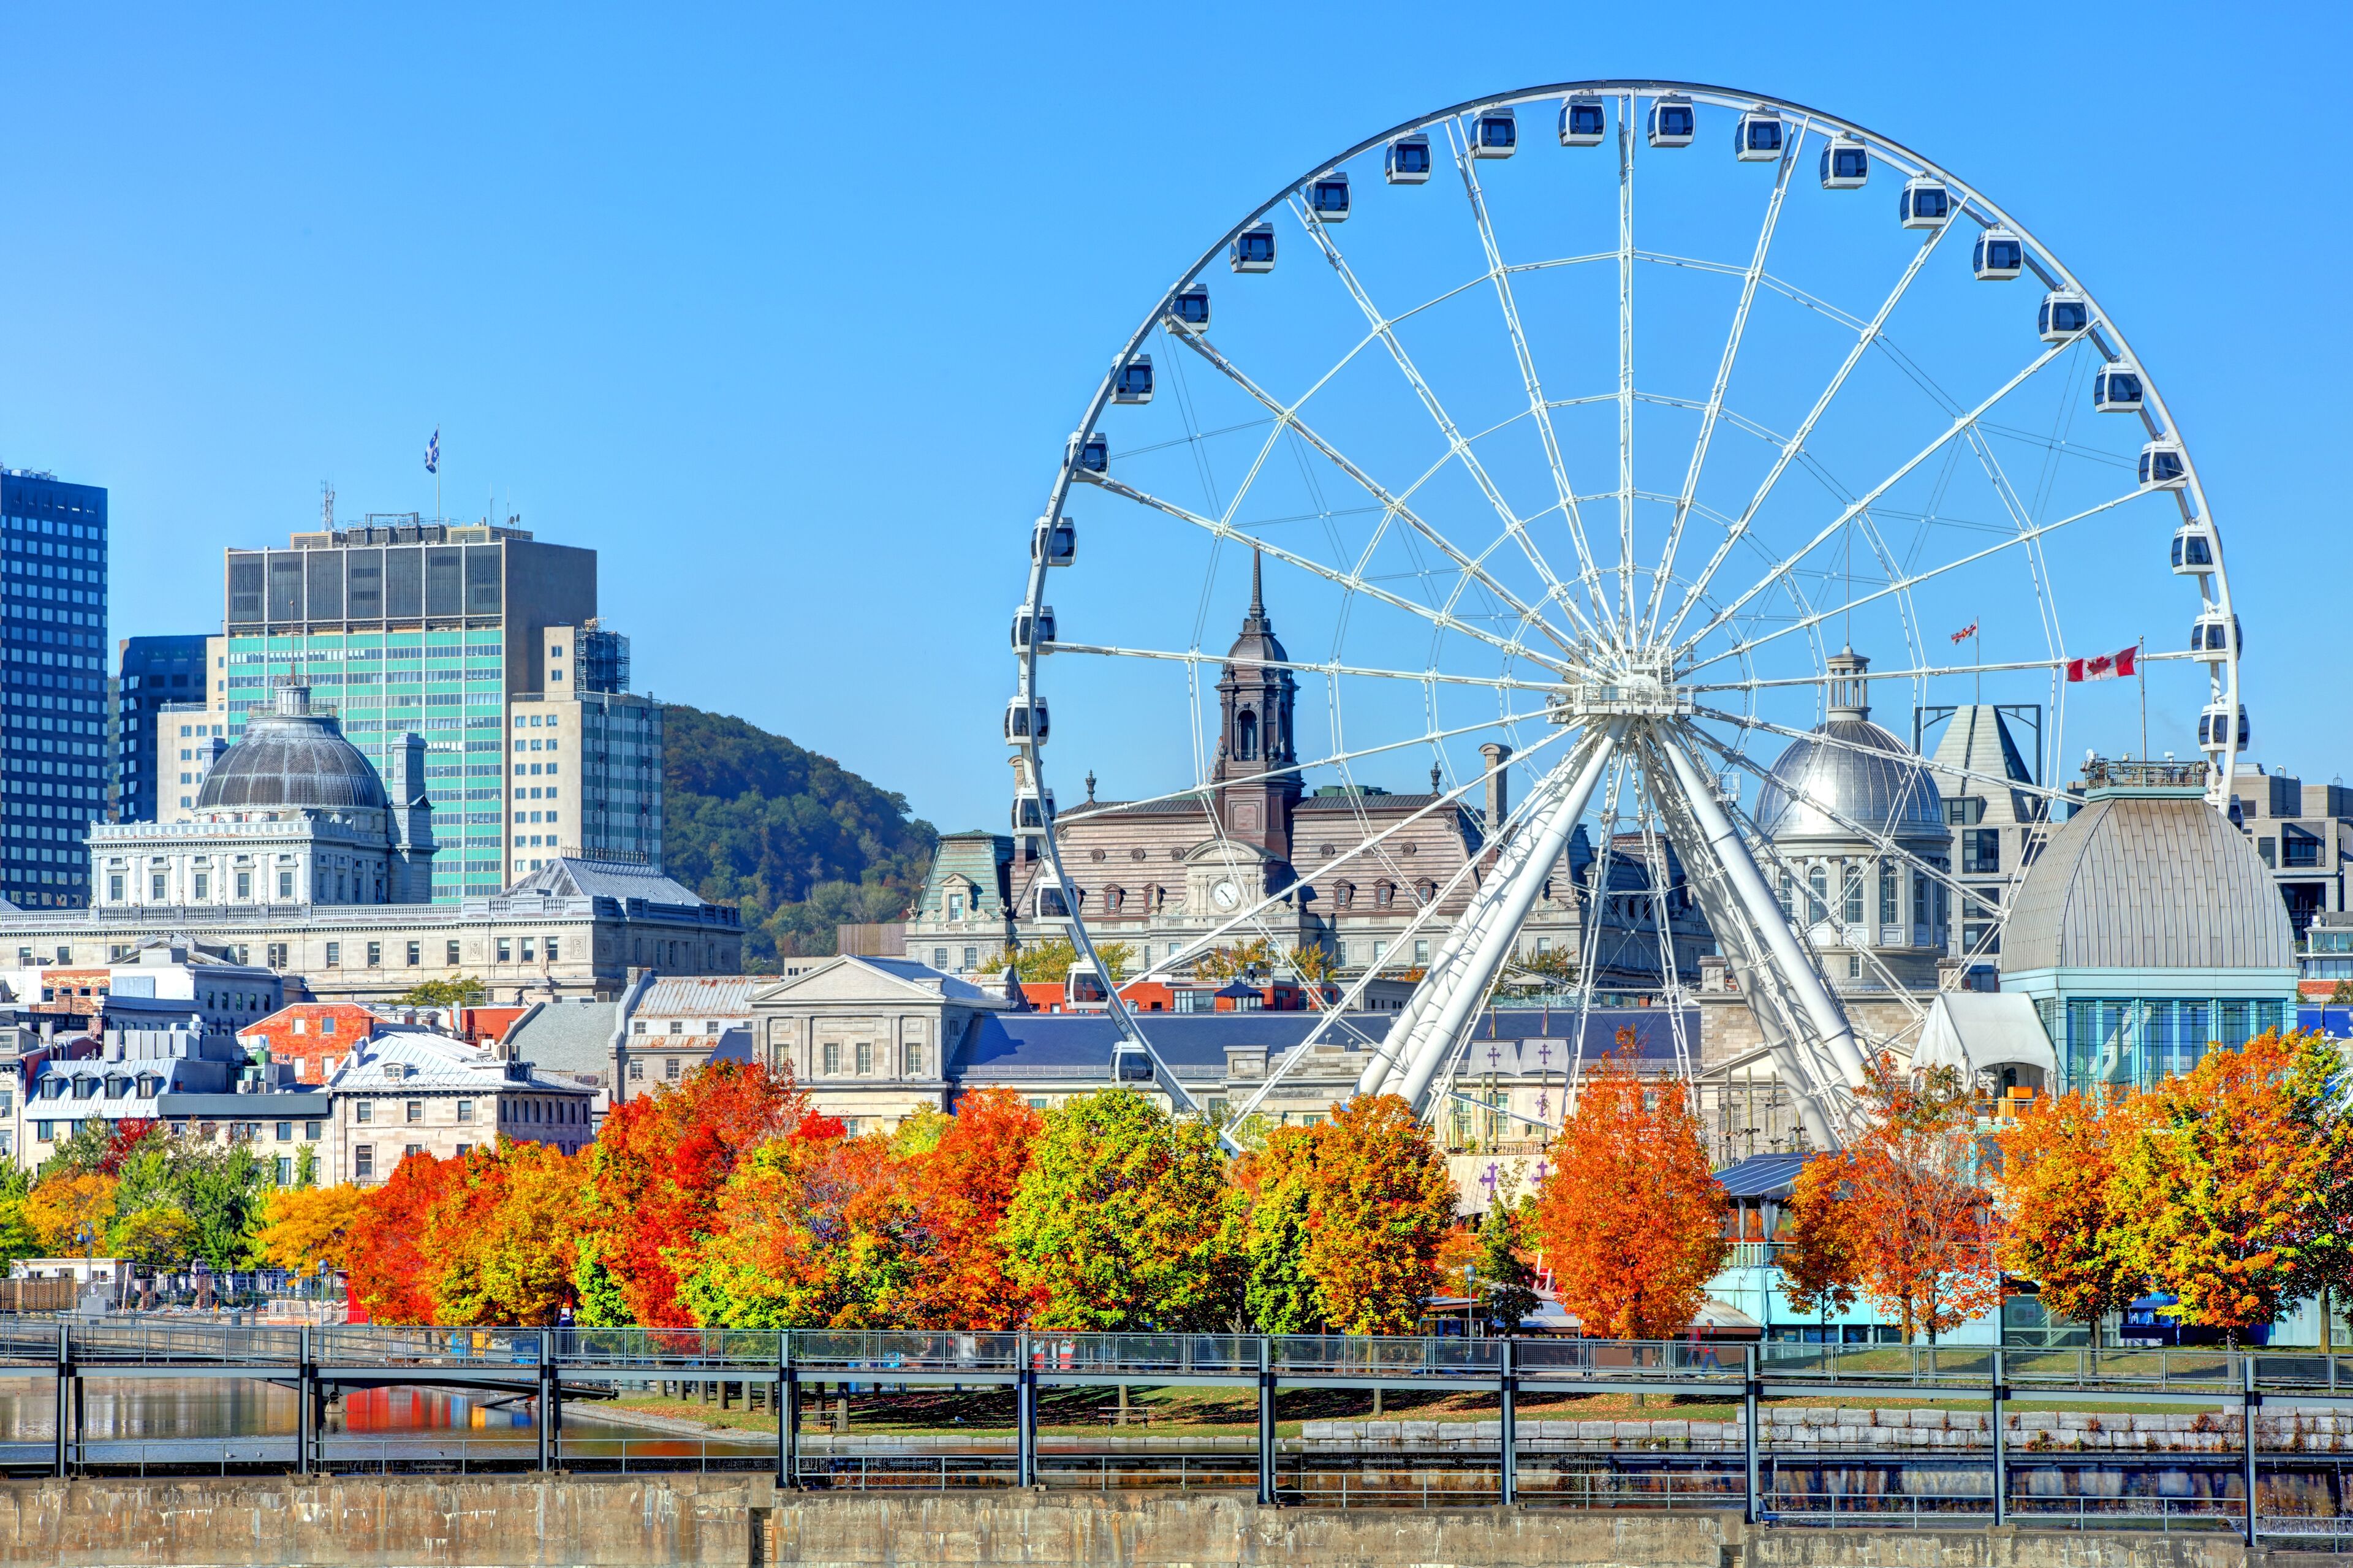 Les couleurs vives de l'automne encadrent la grande roue emblématique du Vieux-Port de Montréal, offrant une vue pittoresque devant l'architecture historique de la ville.